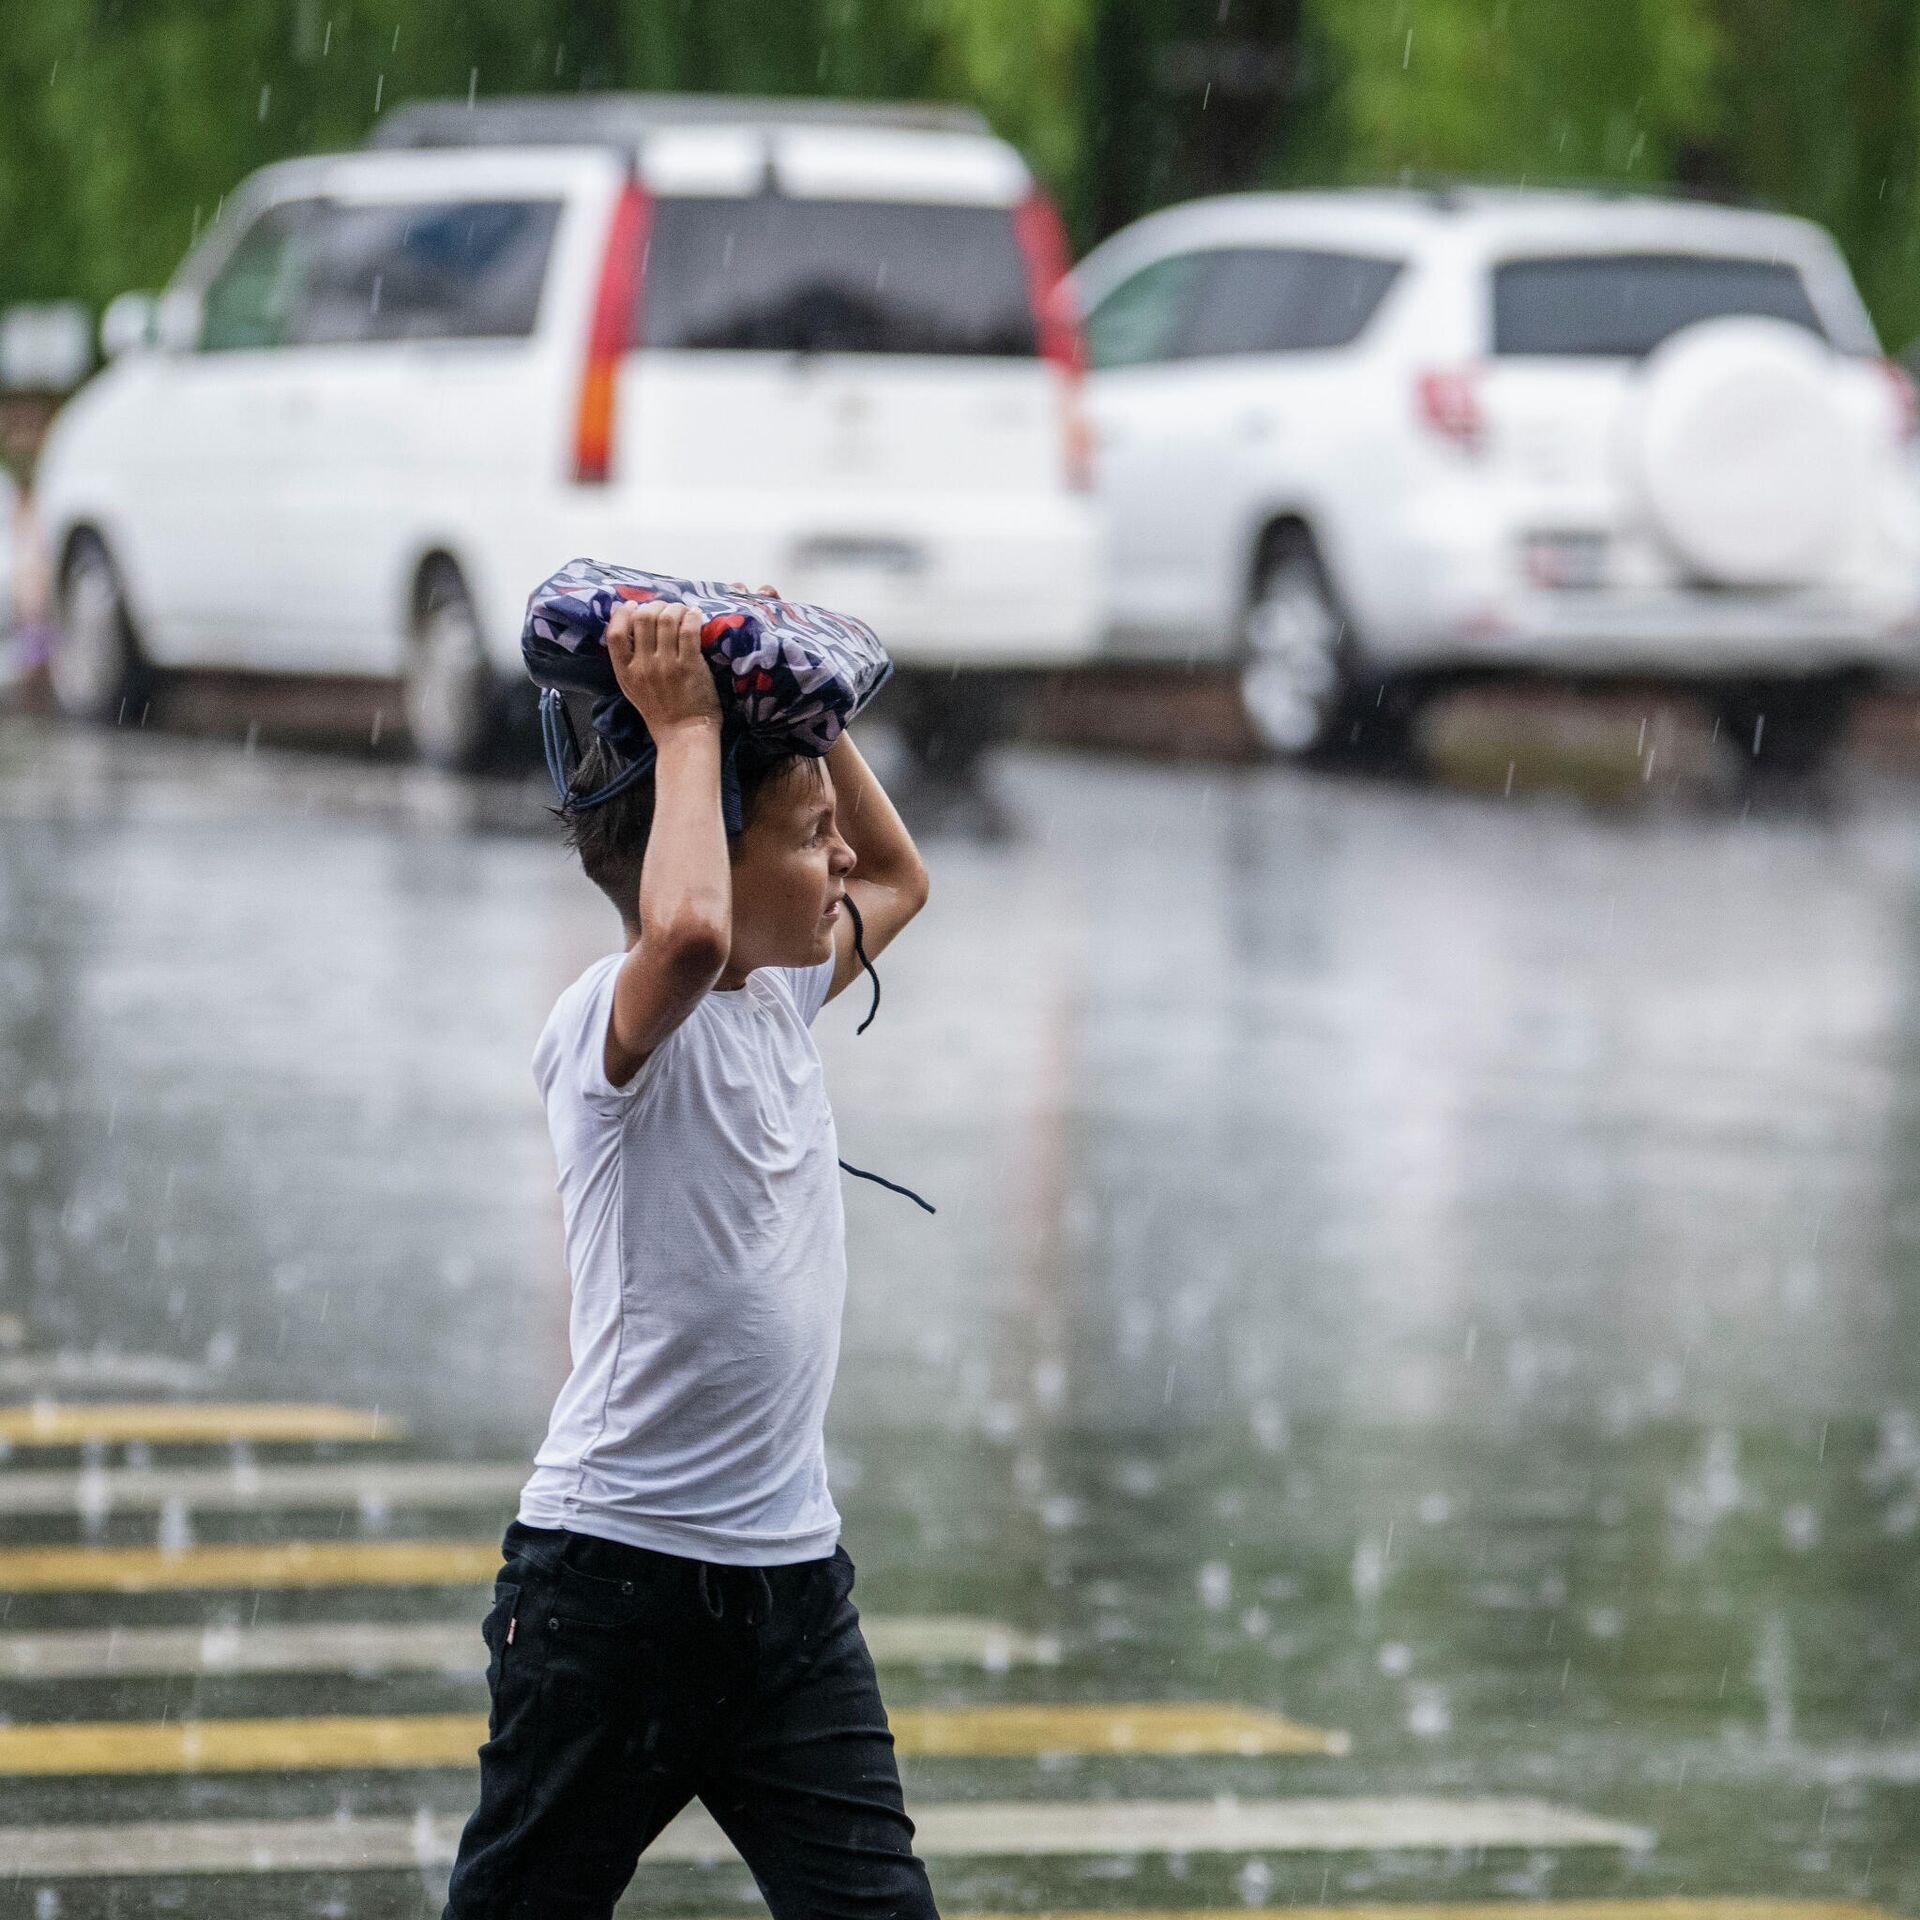 Дождь в Бишкеке. Дождик в волосах. В сильный дождь в кепке. Lin - ливни.